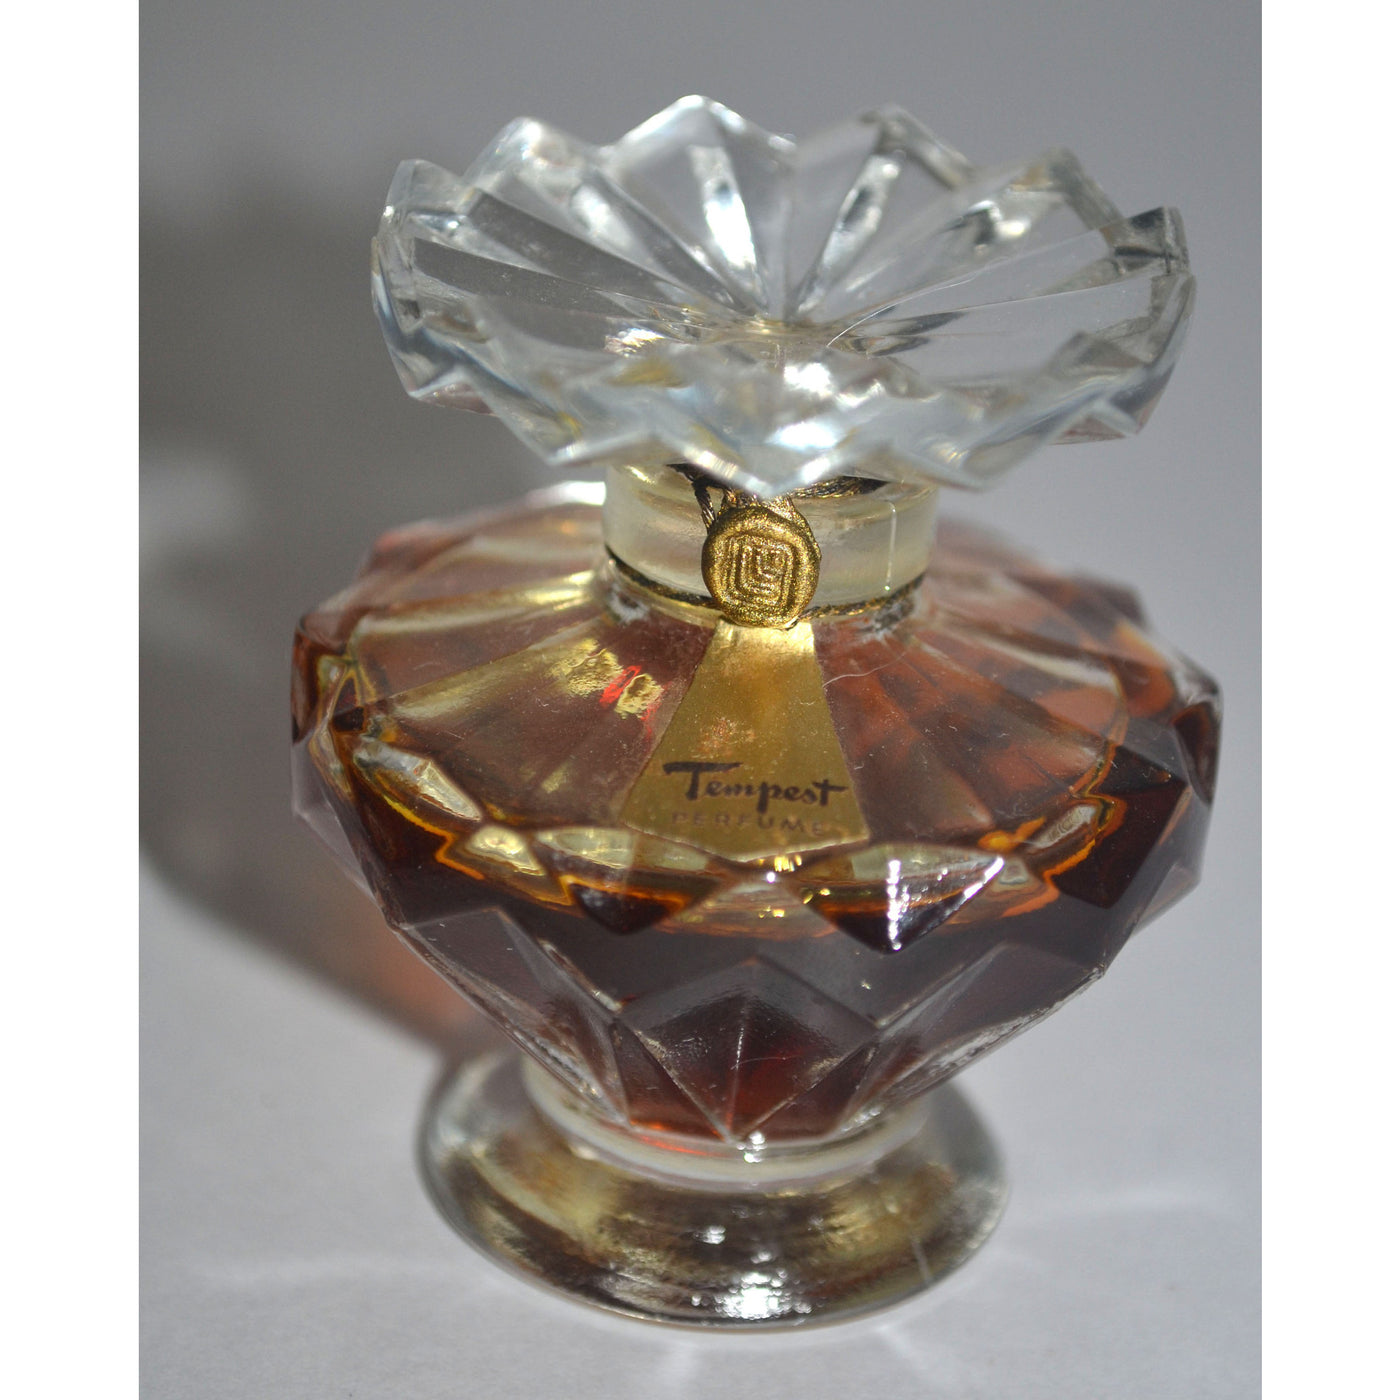 Vintage Lucien Lelong Tempest Perfume